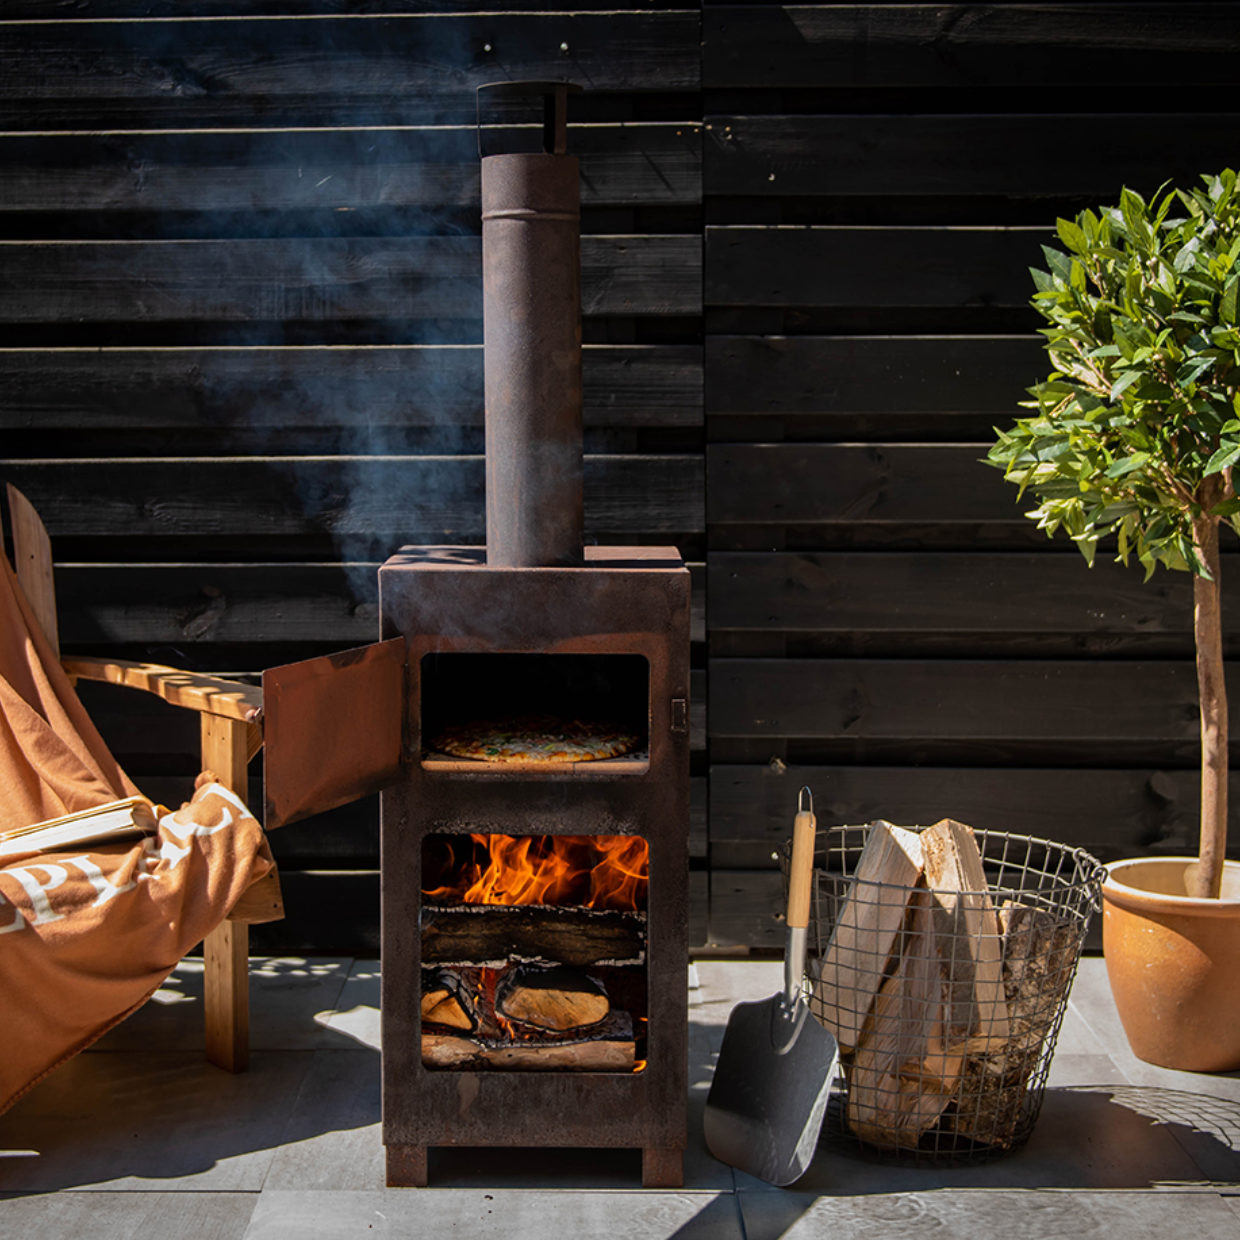 Abstractie Kruik tuin Fancy Flames Terraskachel + Flammkuchen oven roest - Ovenwinkel.com | puur  kookplezier